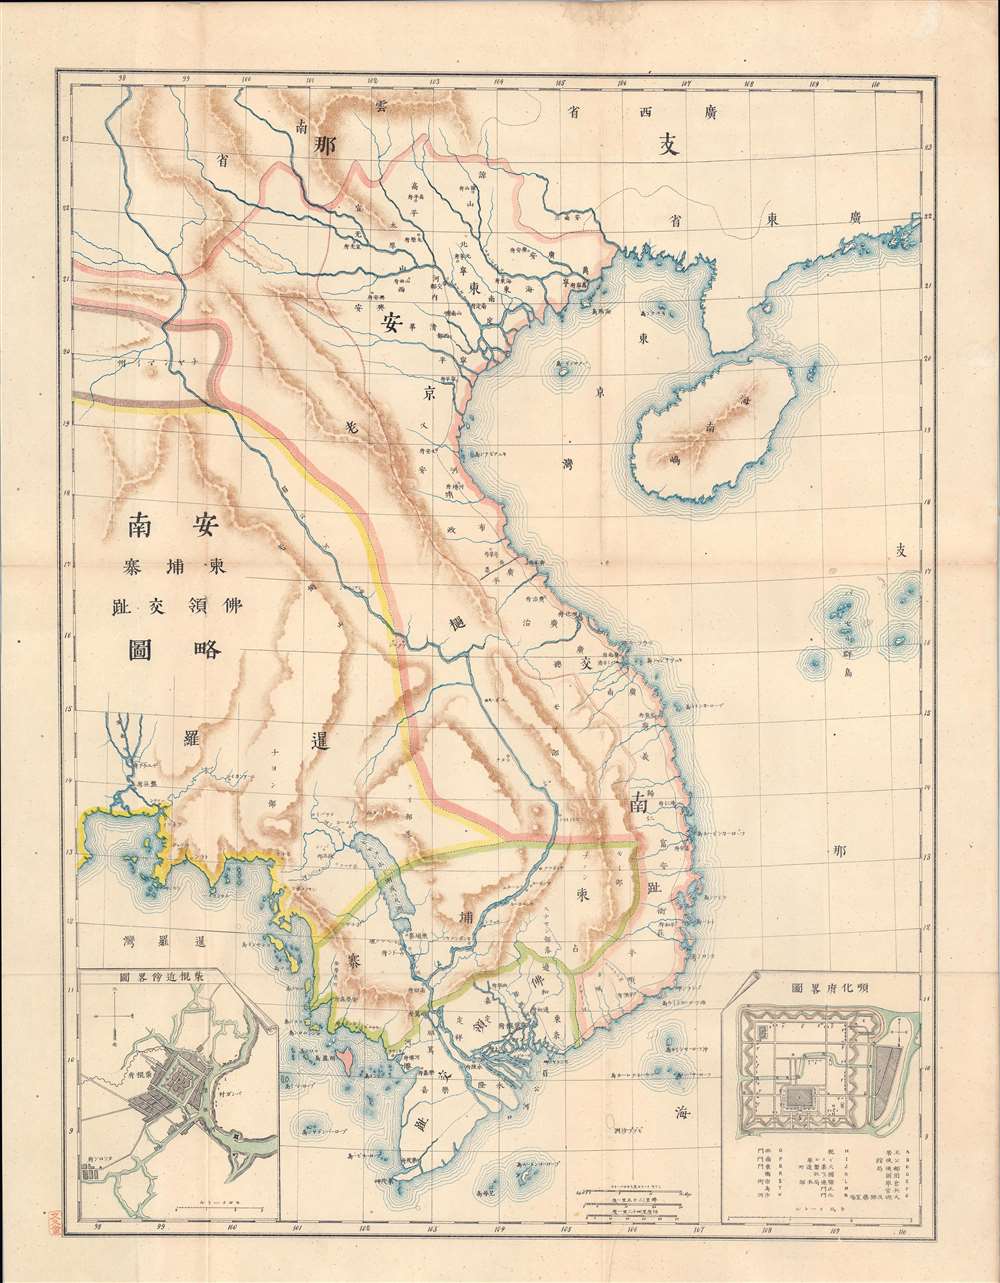 安南史附圖  甲 安南, 柬埔寨, 佛領交趾略圖/ [History of Annam Appendix Map No. 1 Sketch Map of Annam, Cambodia, and French Cochinchine]. - Main View